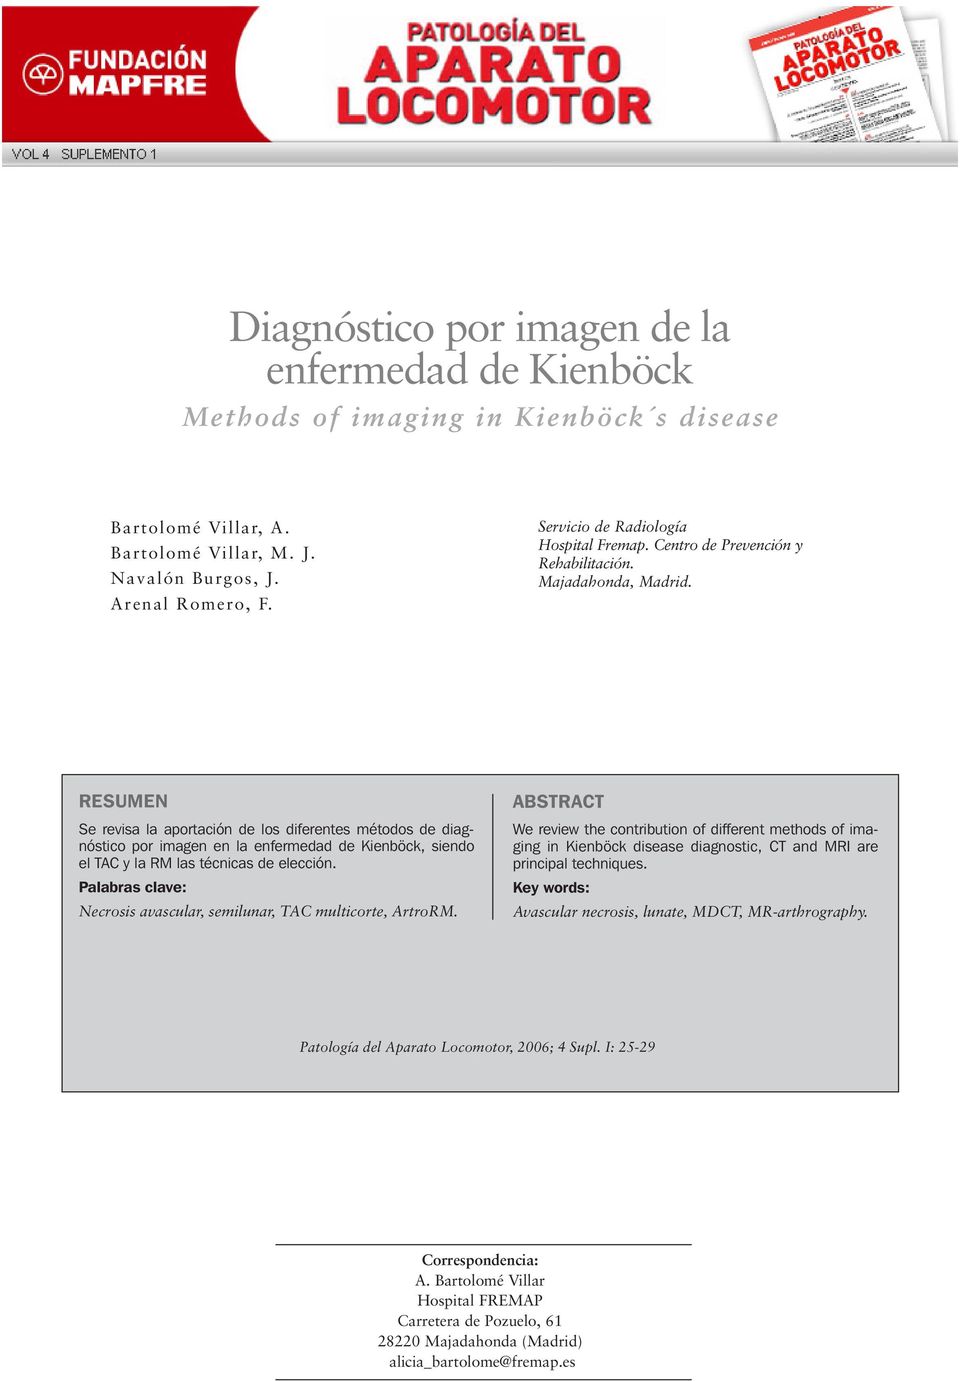 RESUMEN Se revisa la aportación de los diferentes métodos de diagnóstico por imagen en la enfermedad de Kienböck, siendo el TC y la RM las técnicas de elección.